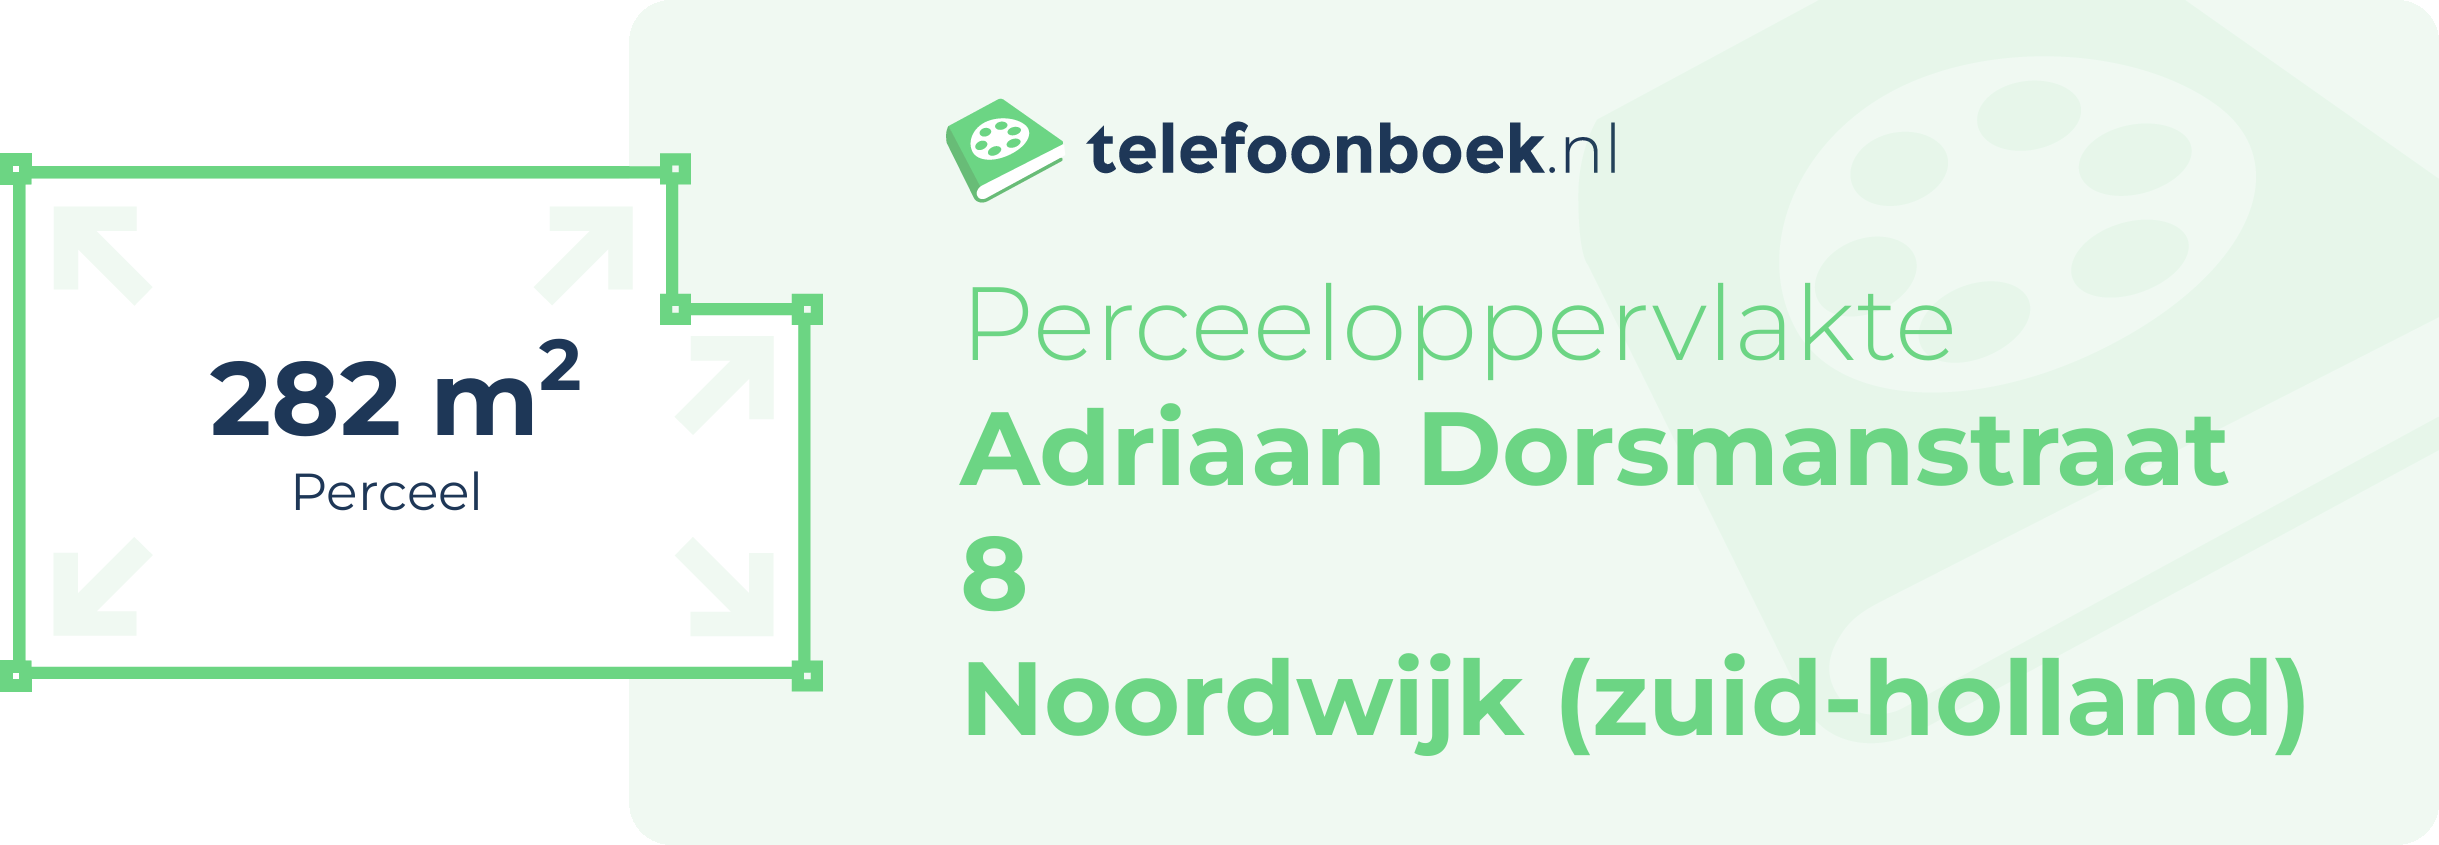 Perceeloppervlakte Adriaan Dorsmanstraat 8 Noordwijk (Zuid-Holland)